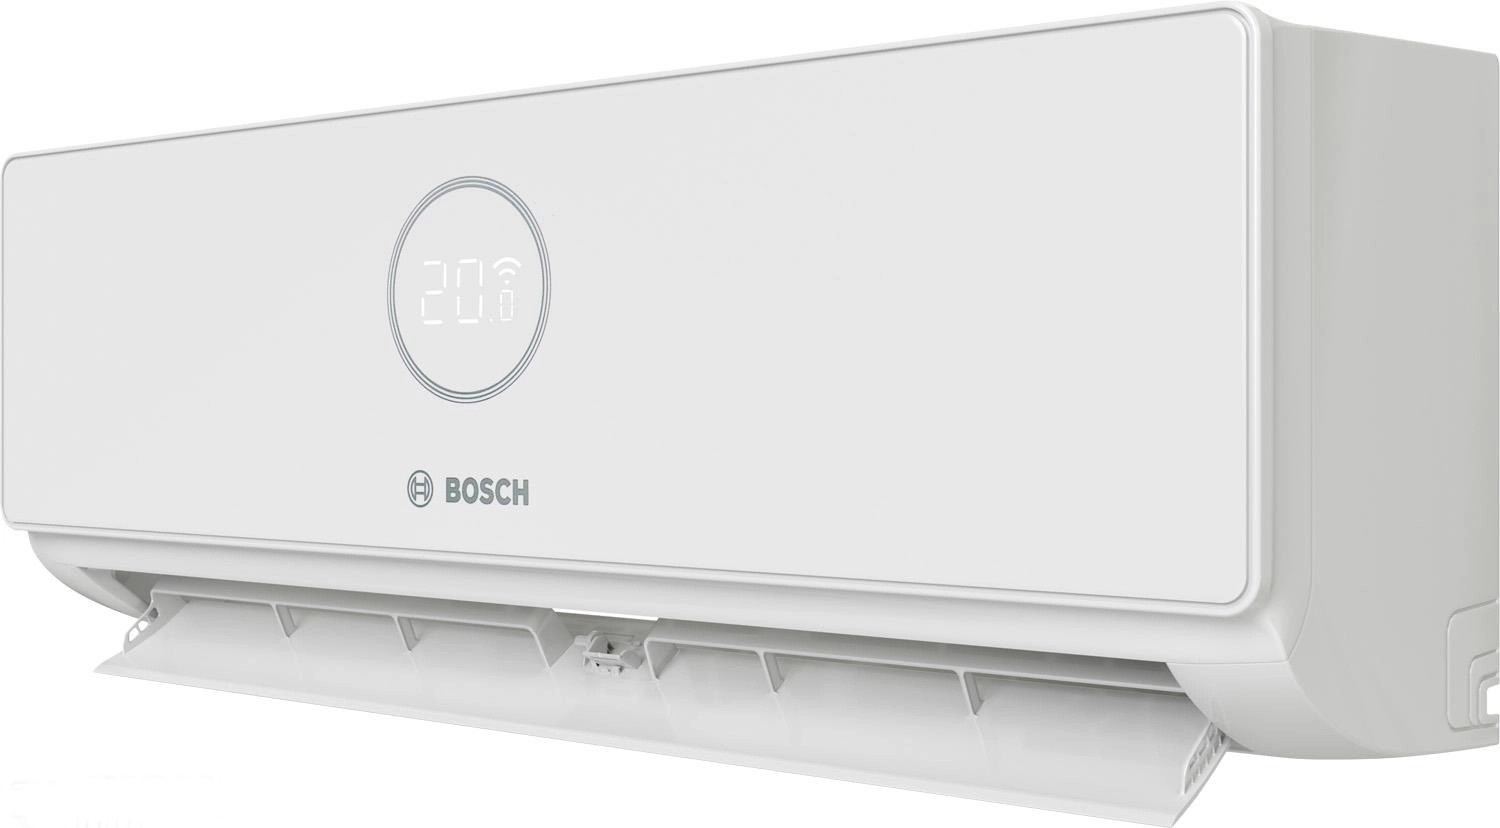 Внутренний блок мультисплит-системы Bosch CL3000iU W 70 E, 7,0 кВт отзывы - изображения 5